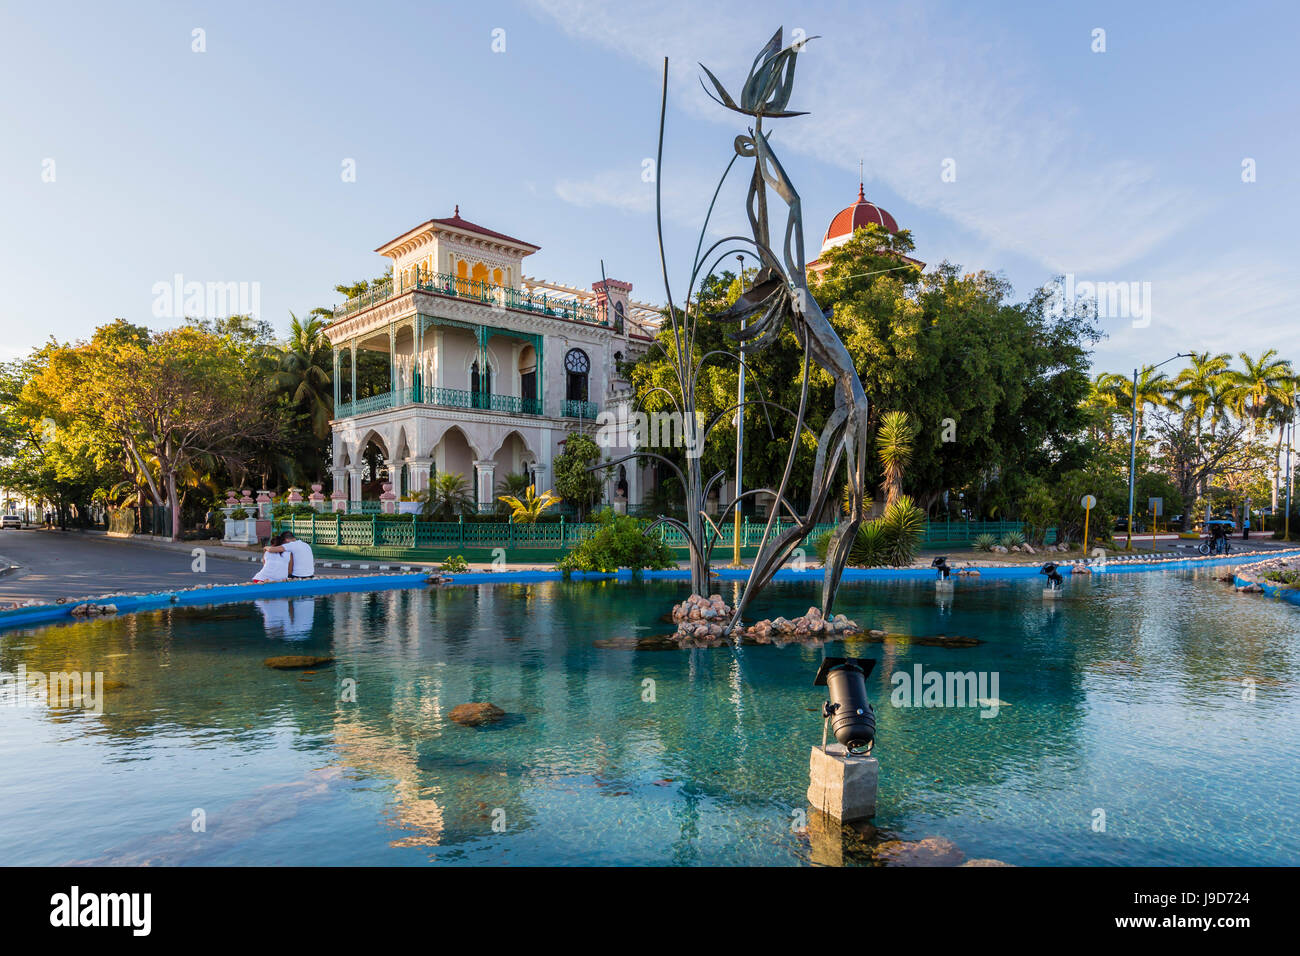 Außenansicht des Palacio de Valle (Valle Palast), Punta Gorda, Cienfuegos, Kuba, Westindische Inseln, Karibik, Mittelamerika Stockfoto